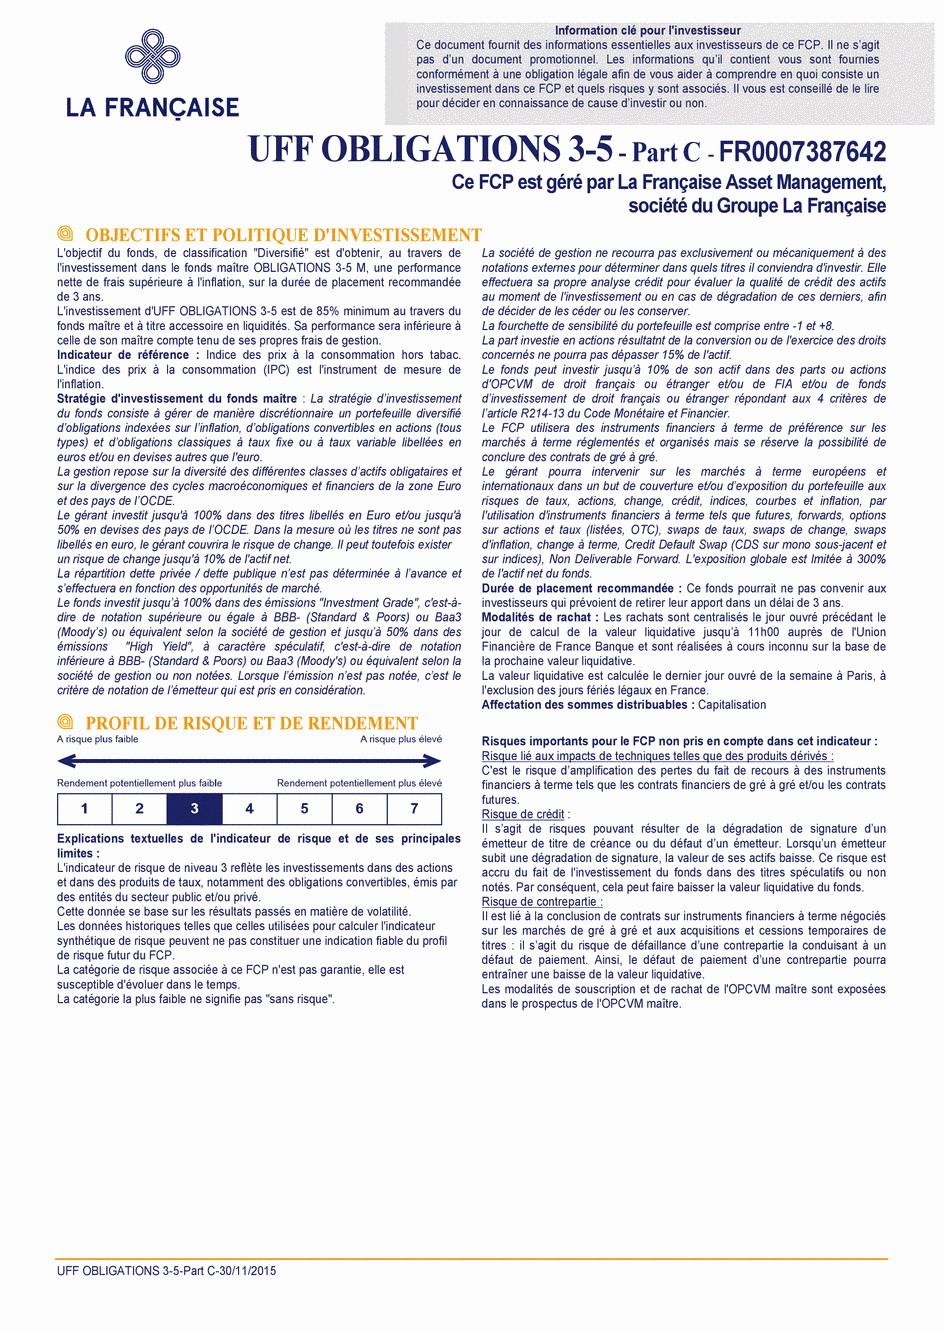 DICI UFF Obligations 3-5 (Part X) - 30/11/2015 - Français